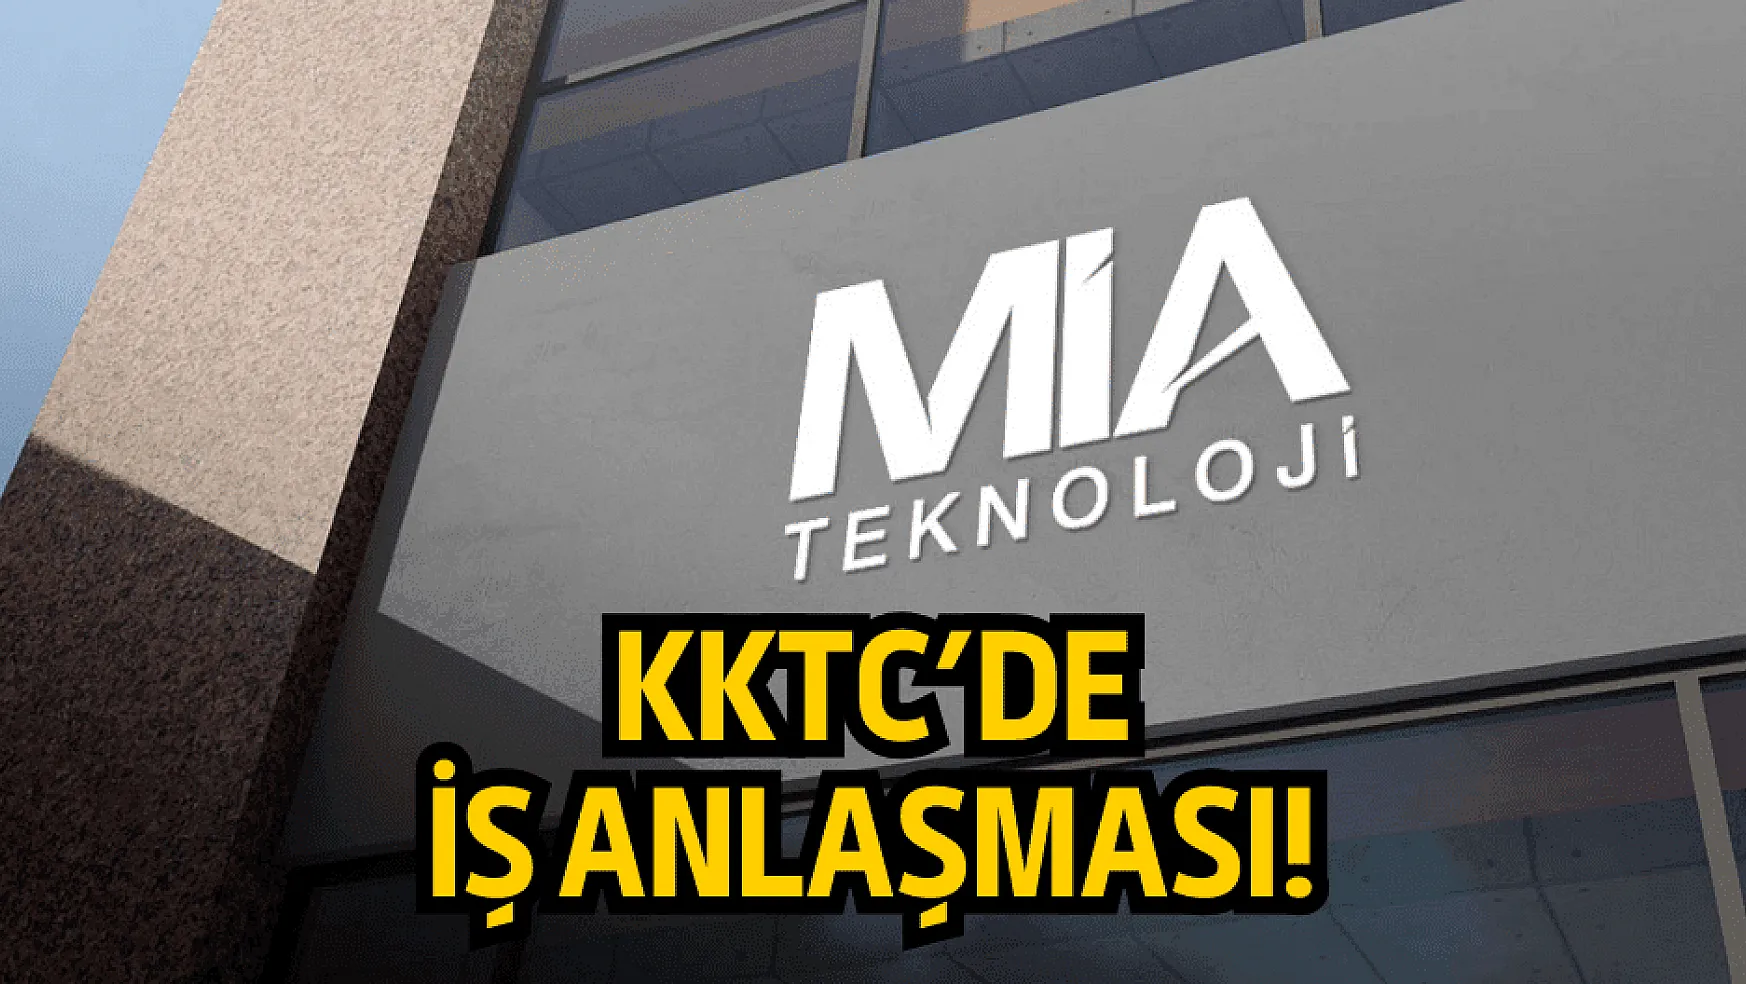 Mia Teknoloji, KKTC'de iş anlaşması imzaladı!